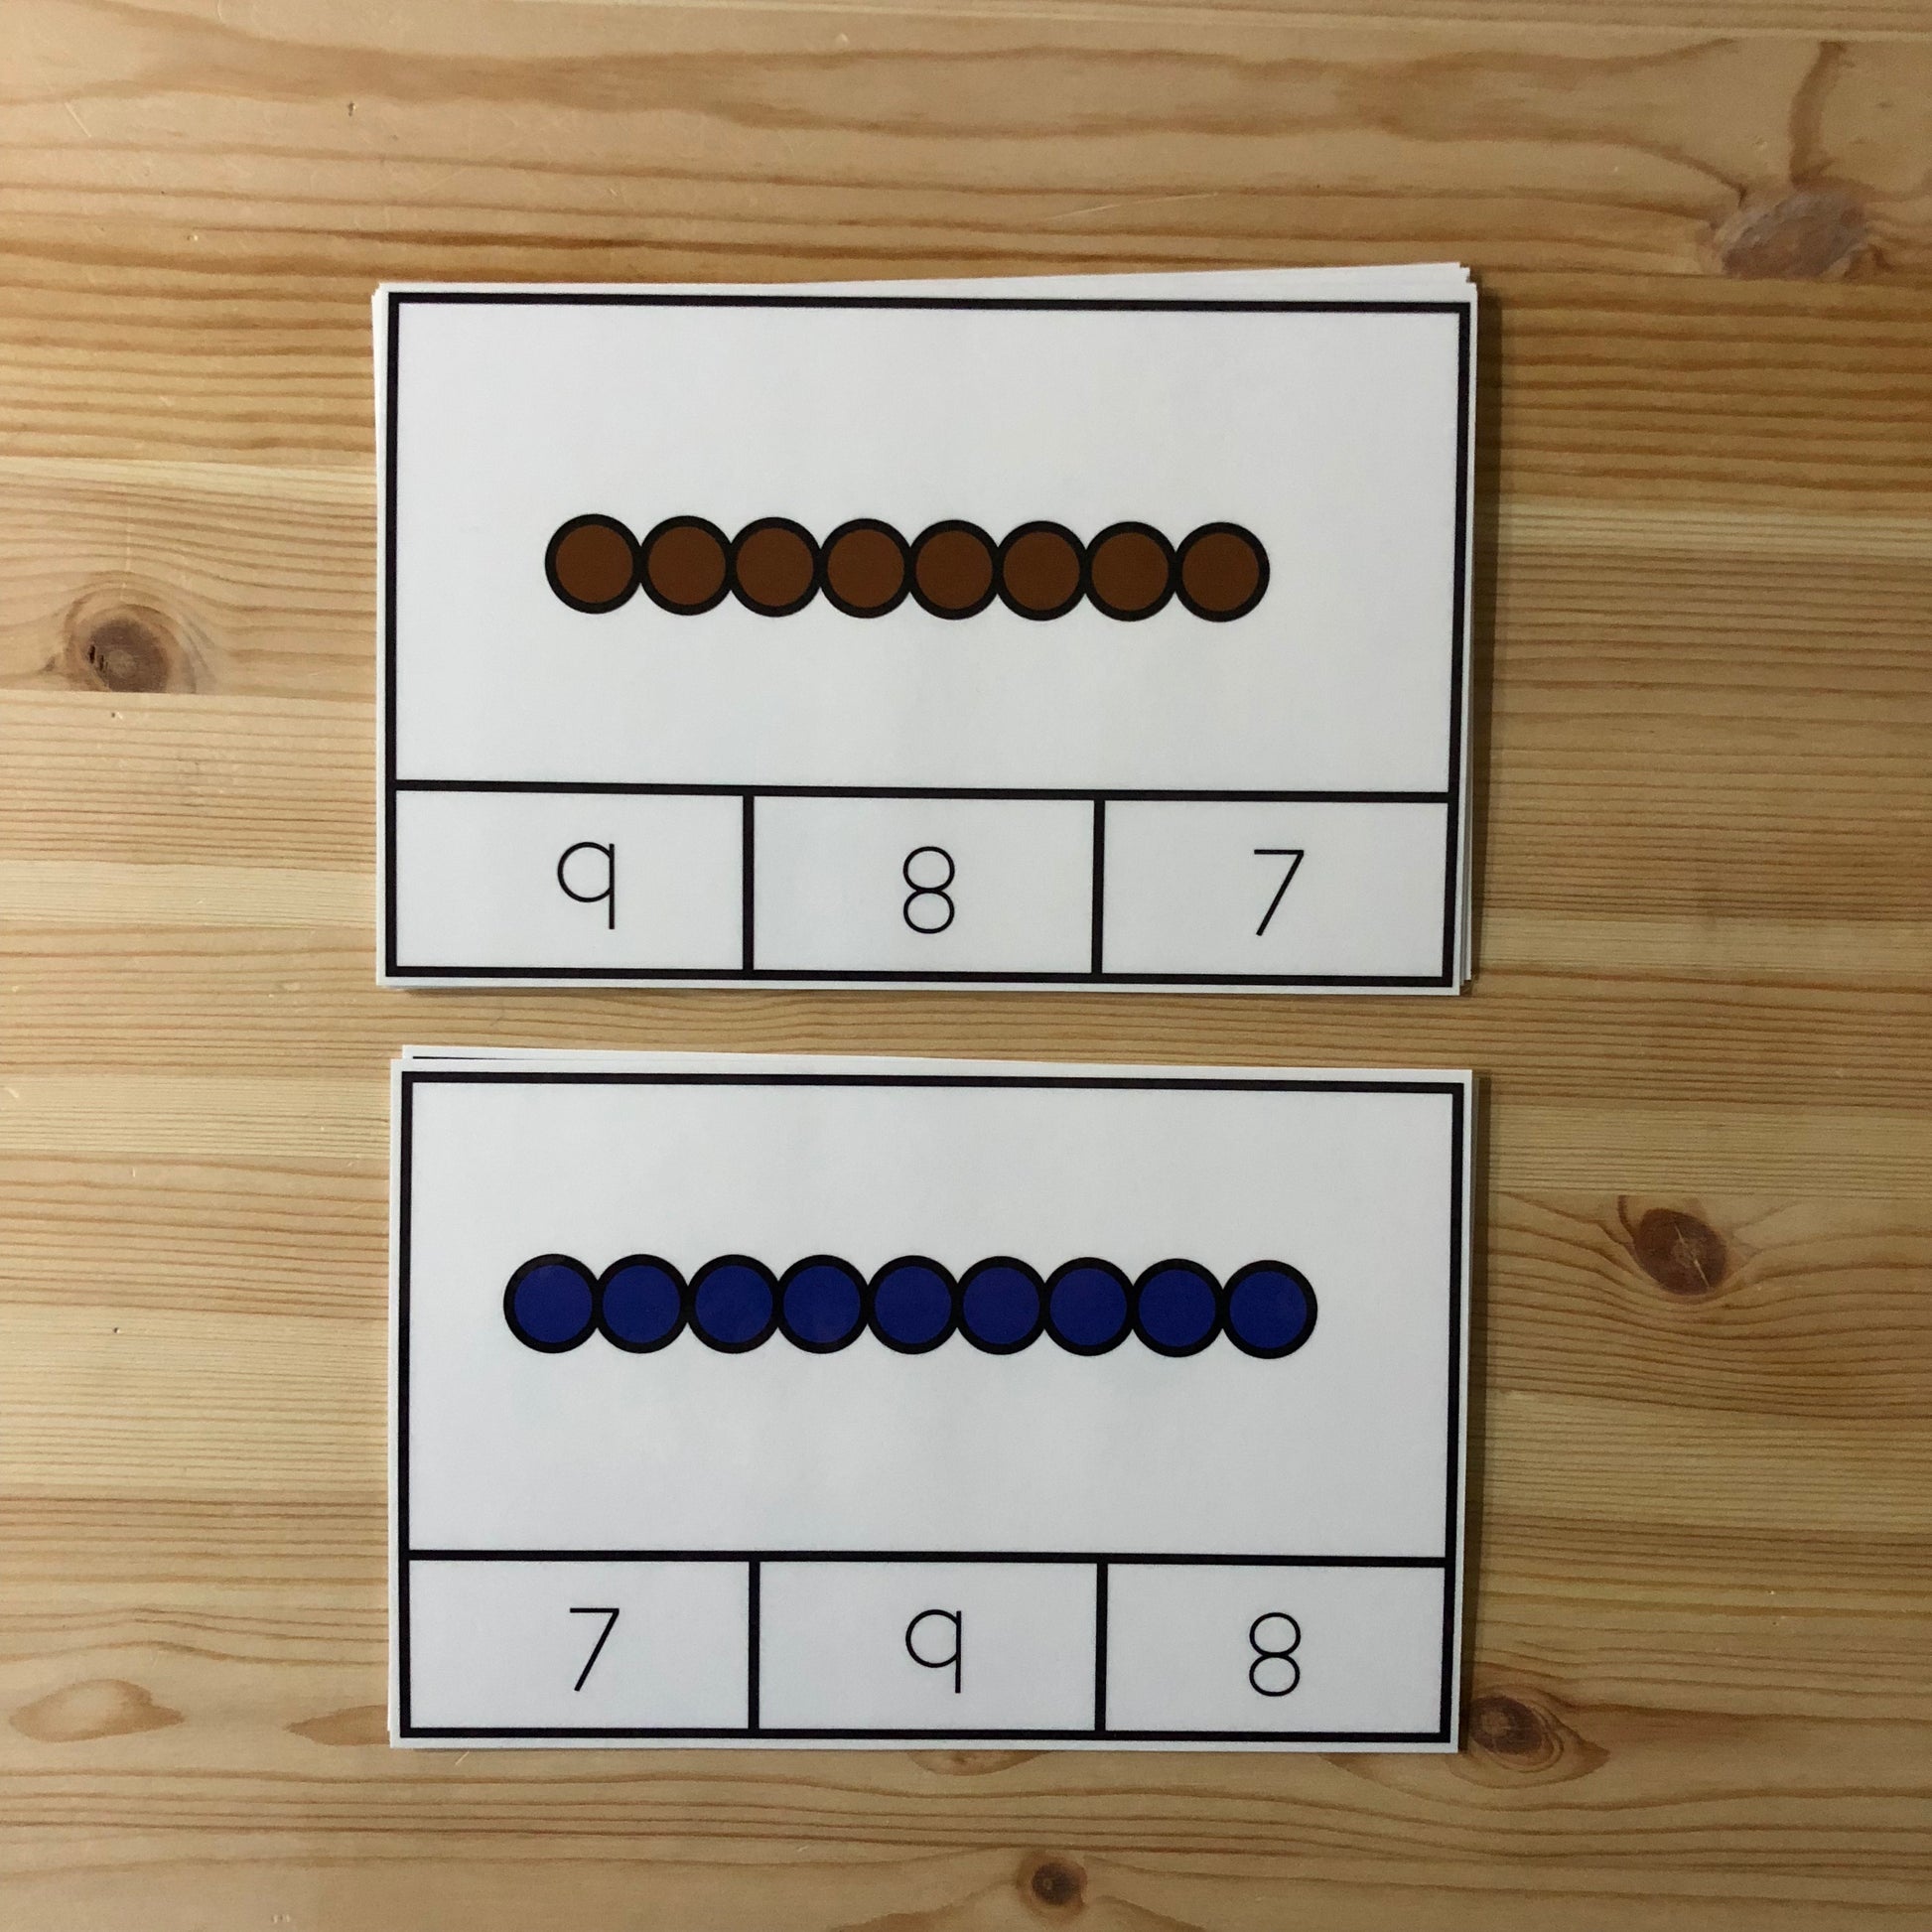 Montessori Colored beads clip cards 1-10 - montessorikiwi